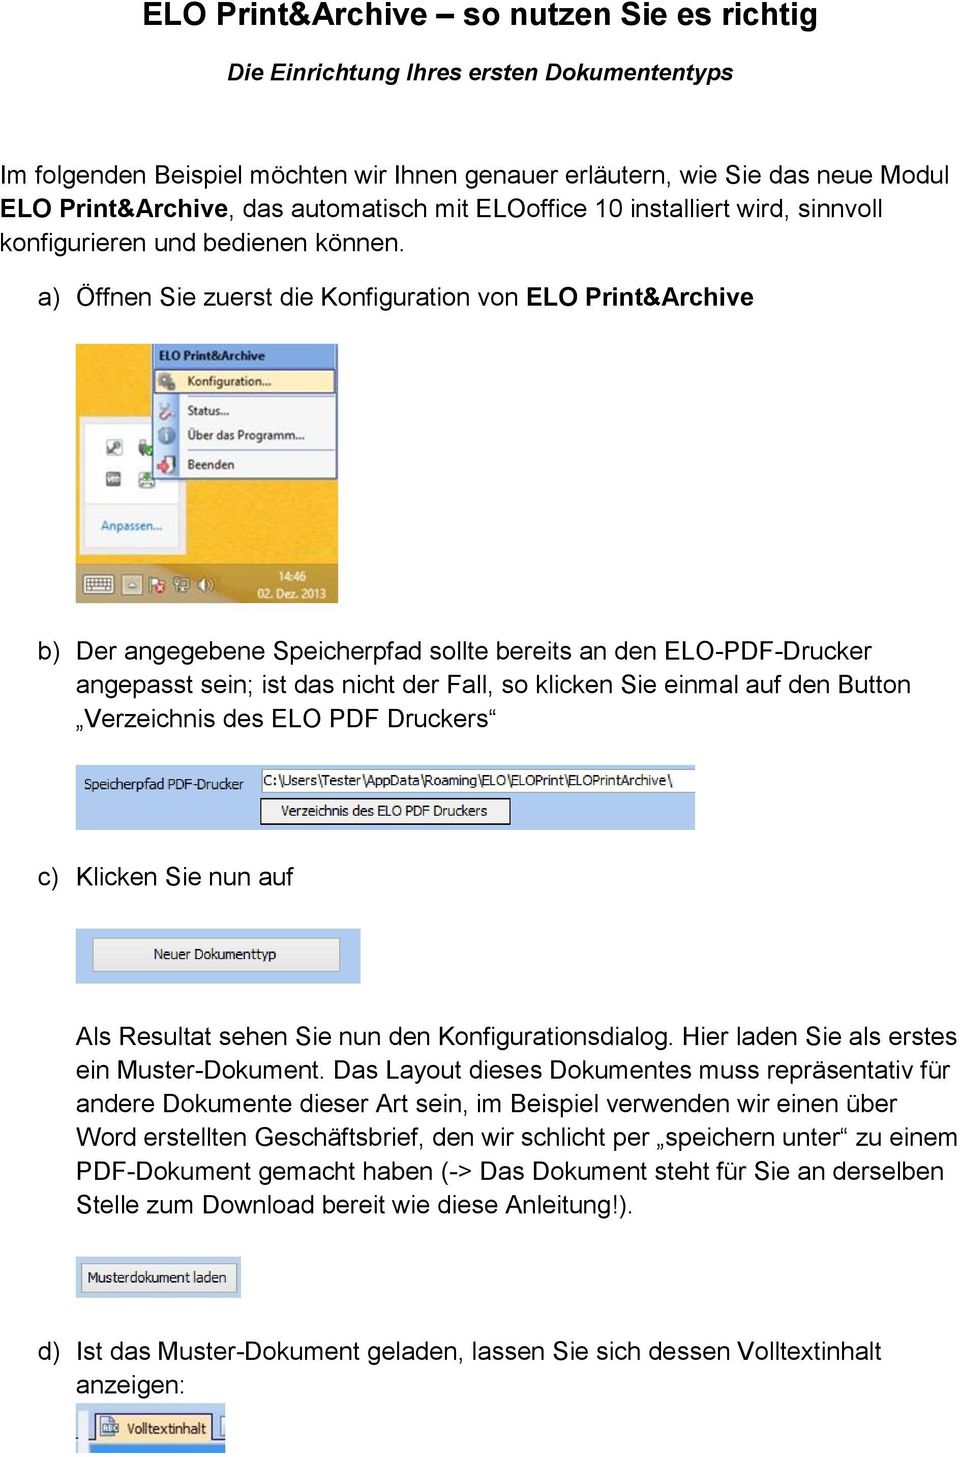 a) Öffnen Sie zuerst die Konfiguration von ELO Print&Archive b) Der angegebene Speicherpfad sollte bereits an den ELO-PDF-Drucker angepasst sein; ist das nicht der Fall, so klicken Sie einmal auf den